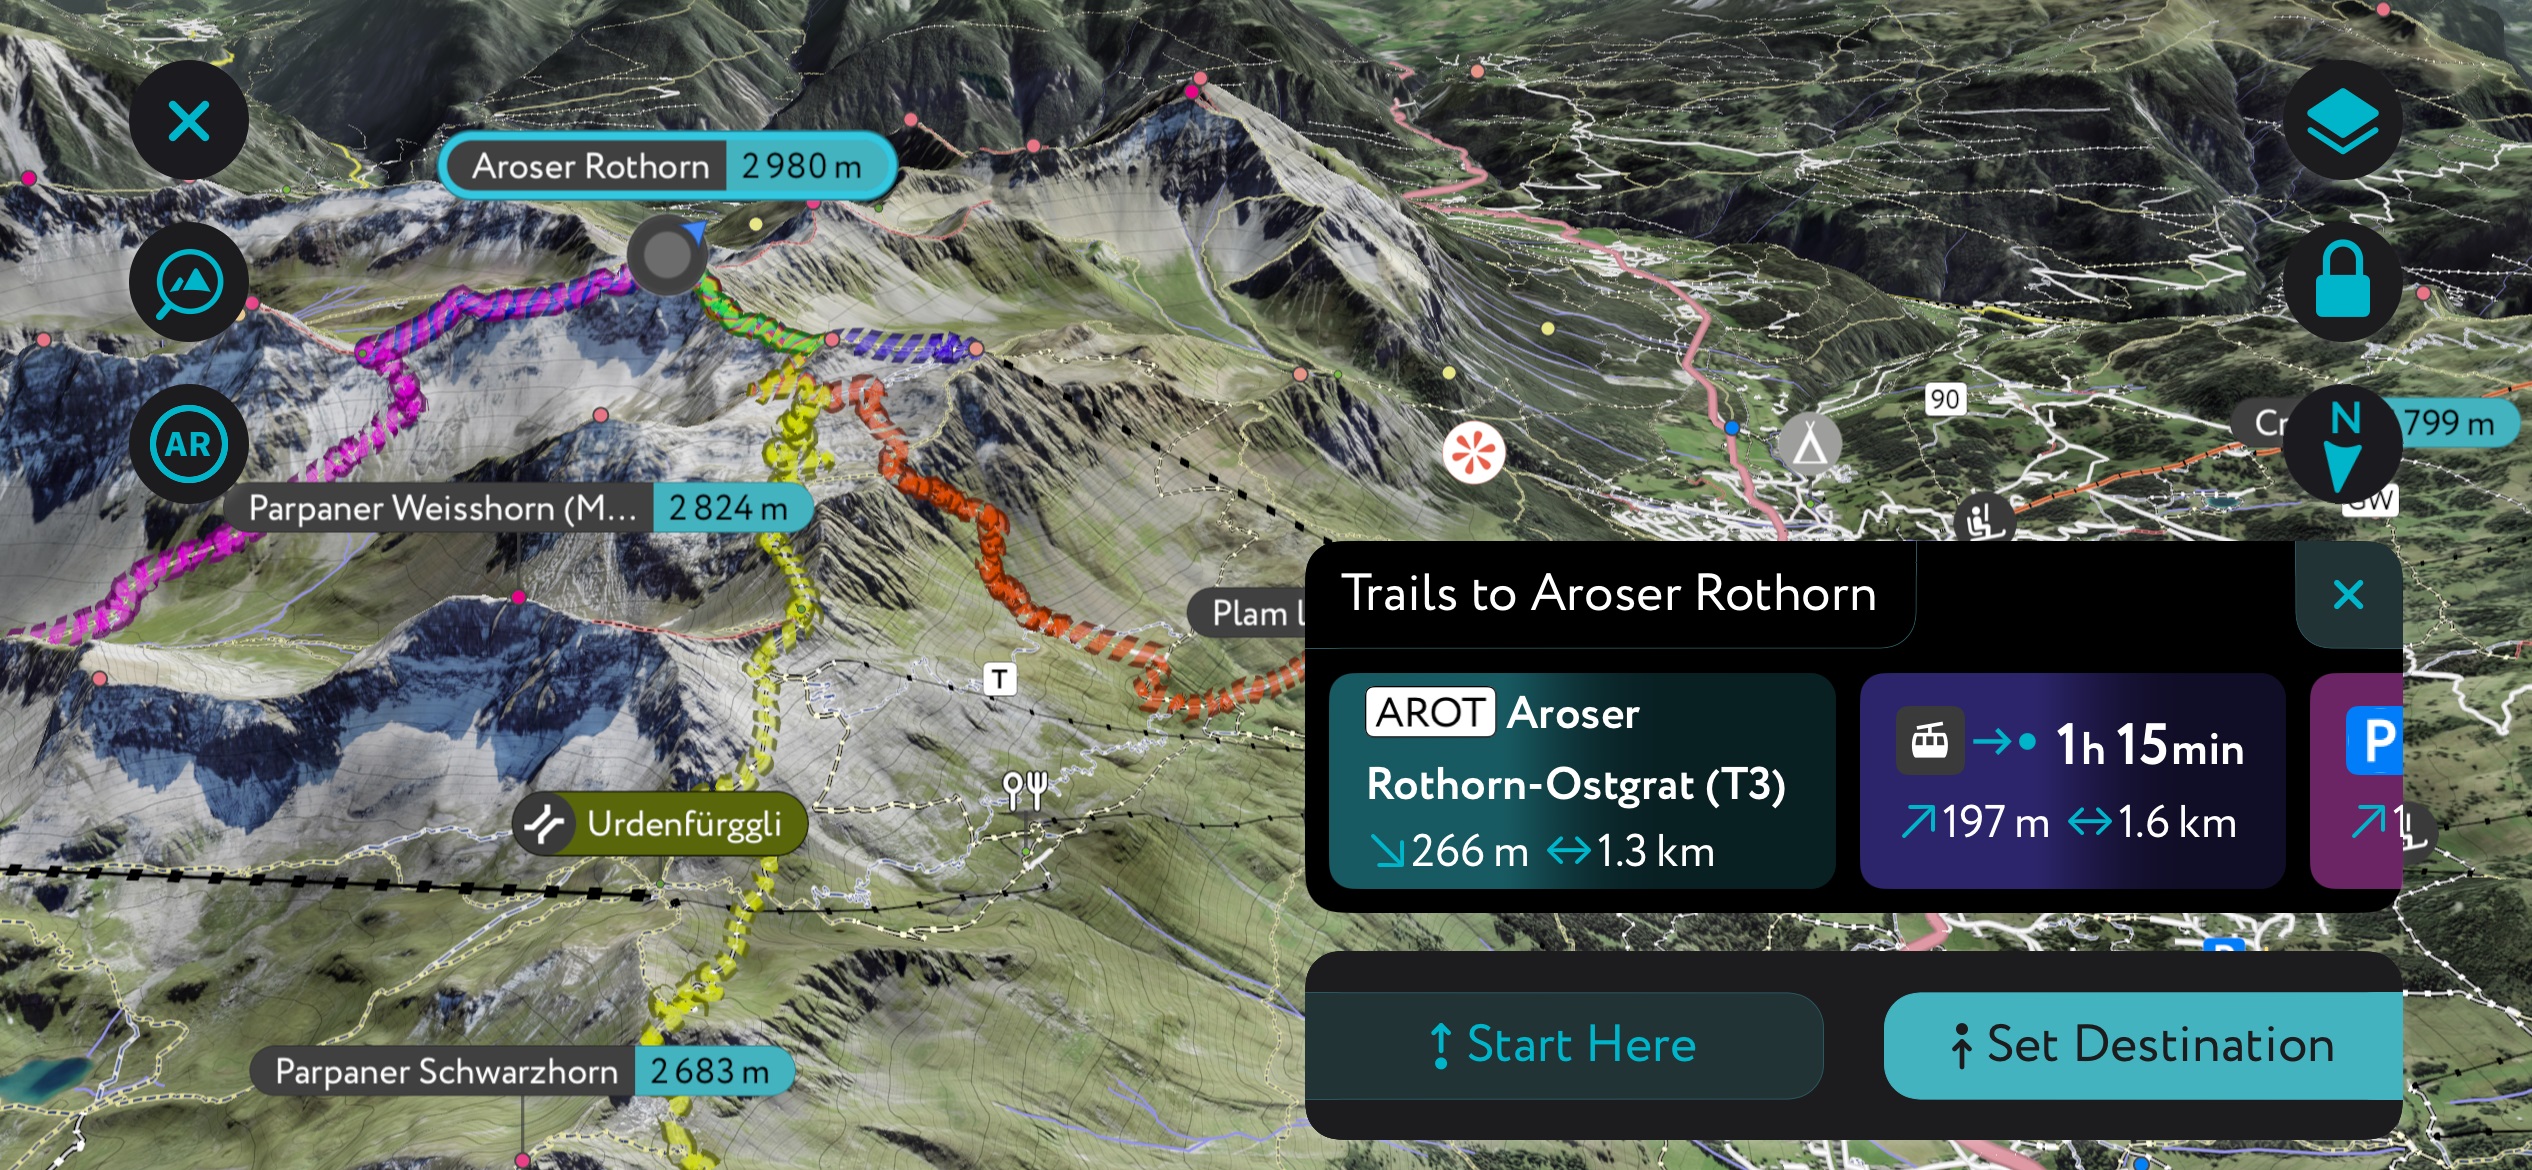 Aroser Rothorn using PeakVisor’s. Plessur Alps